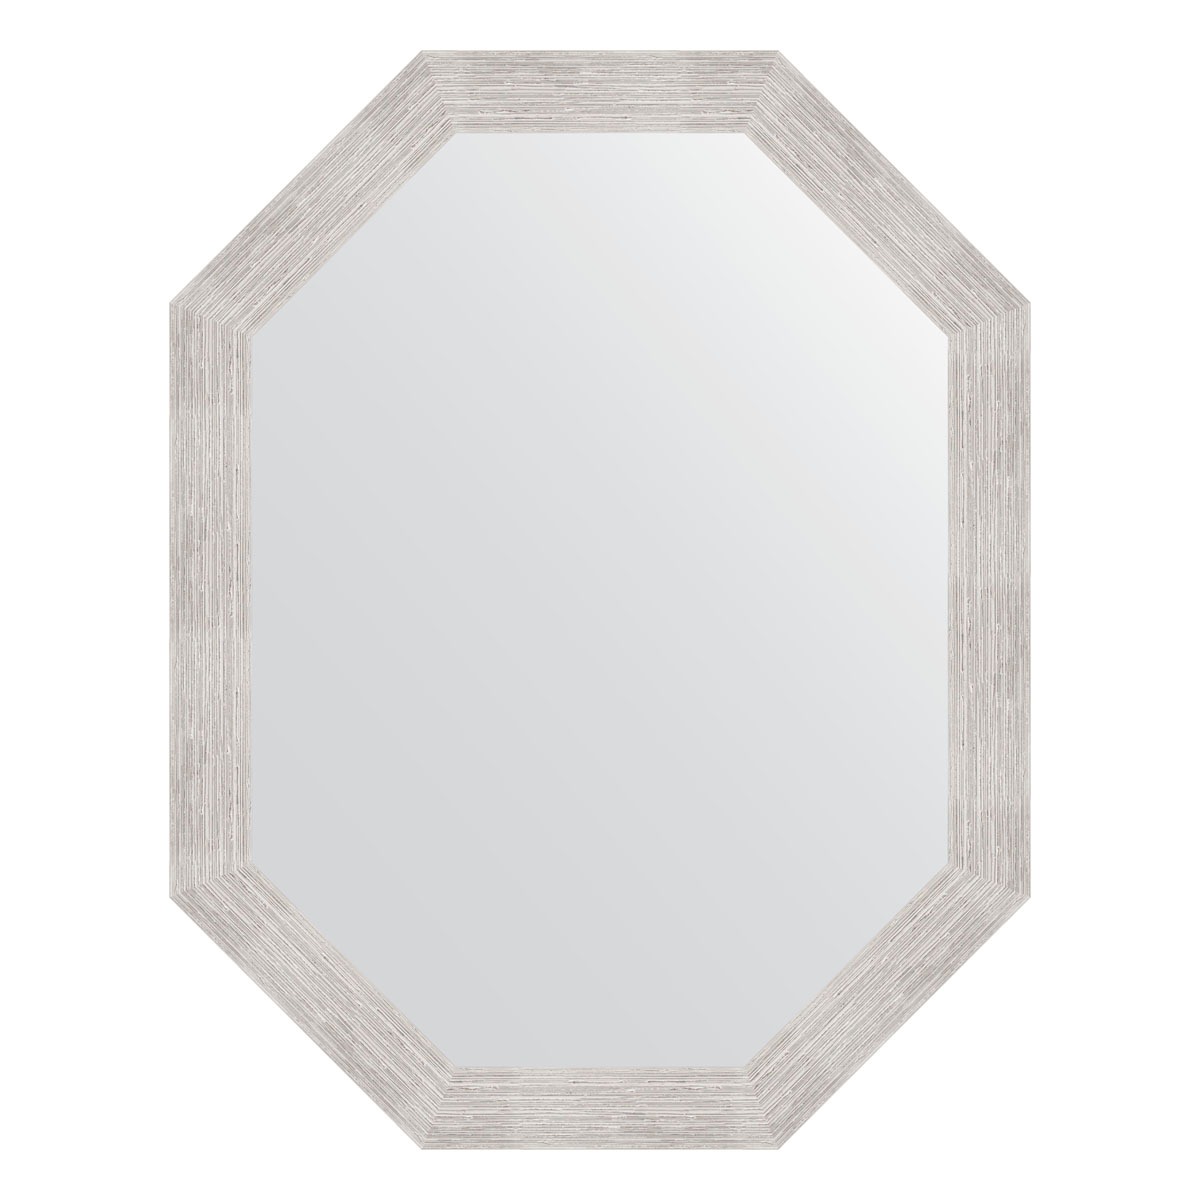 Зеркало в багетной раме Evoform серебряный дождь 70 мм 72x92 см